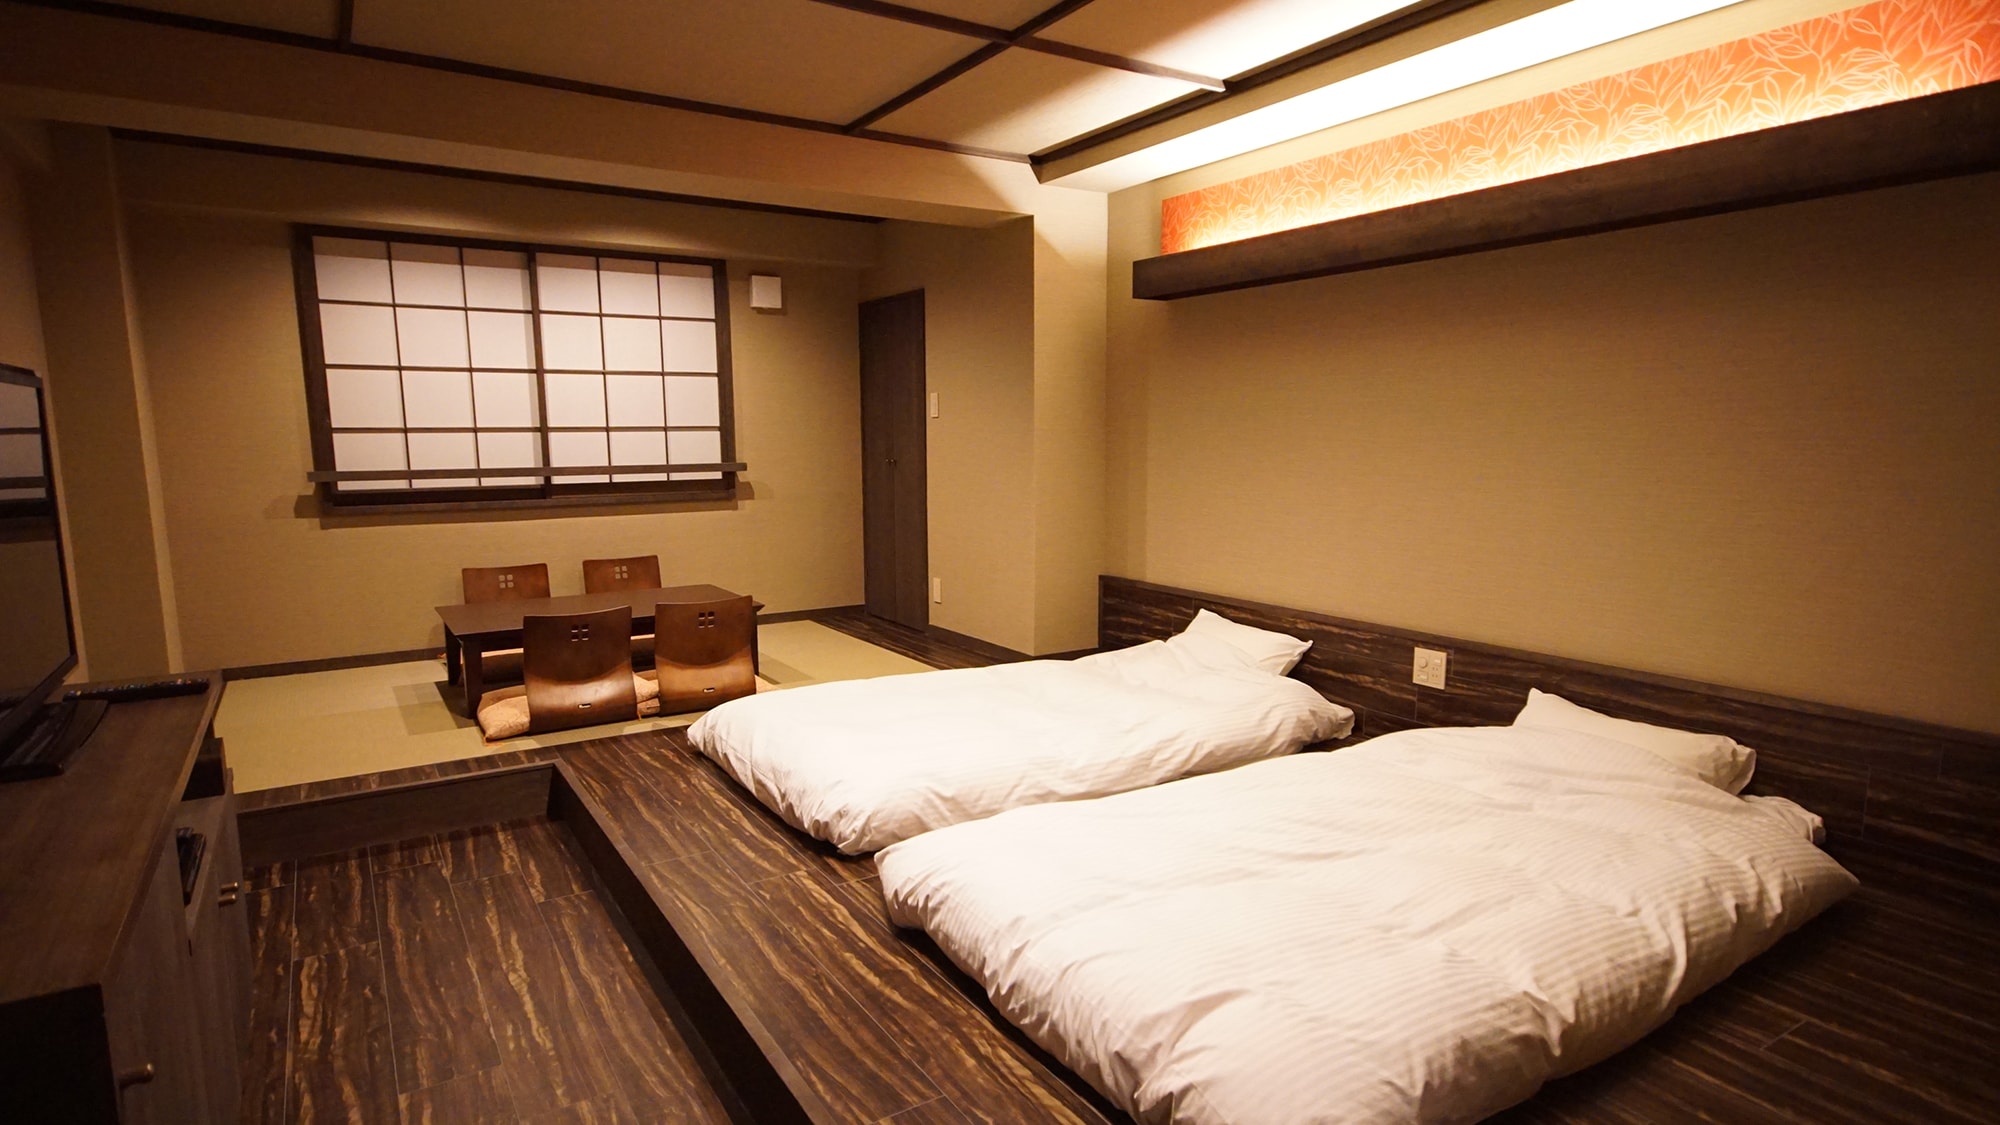 查看日式和西式房間